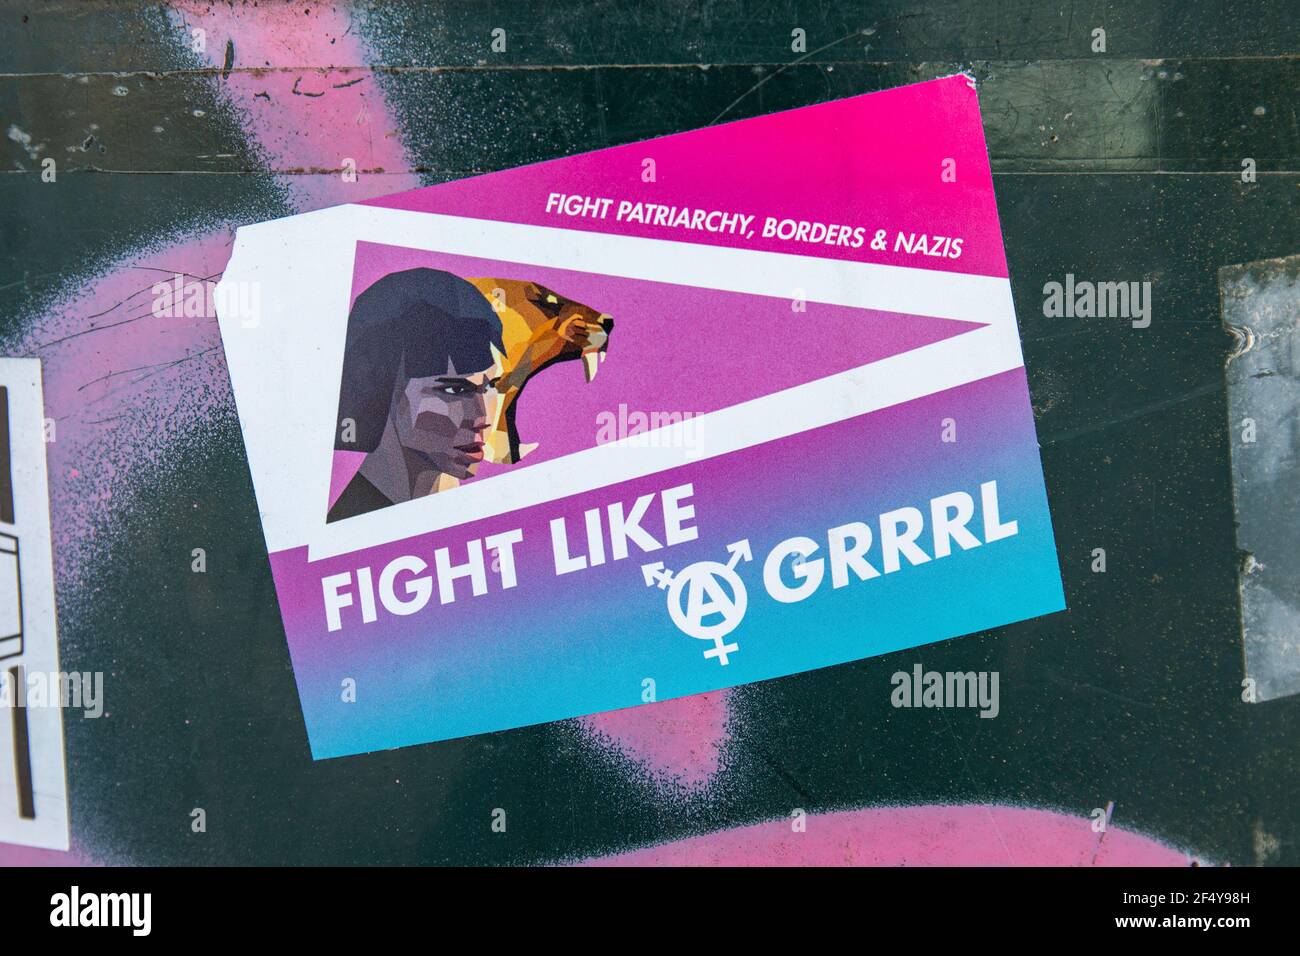 Fight like a grrrl. Sticker on a public trash bin. Stock Photo